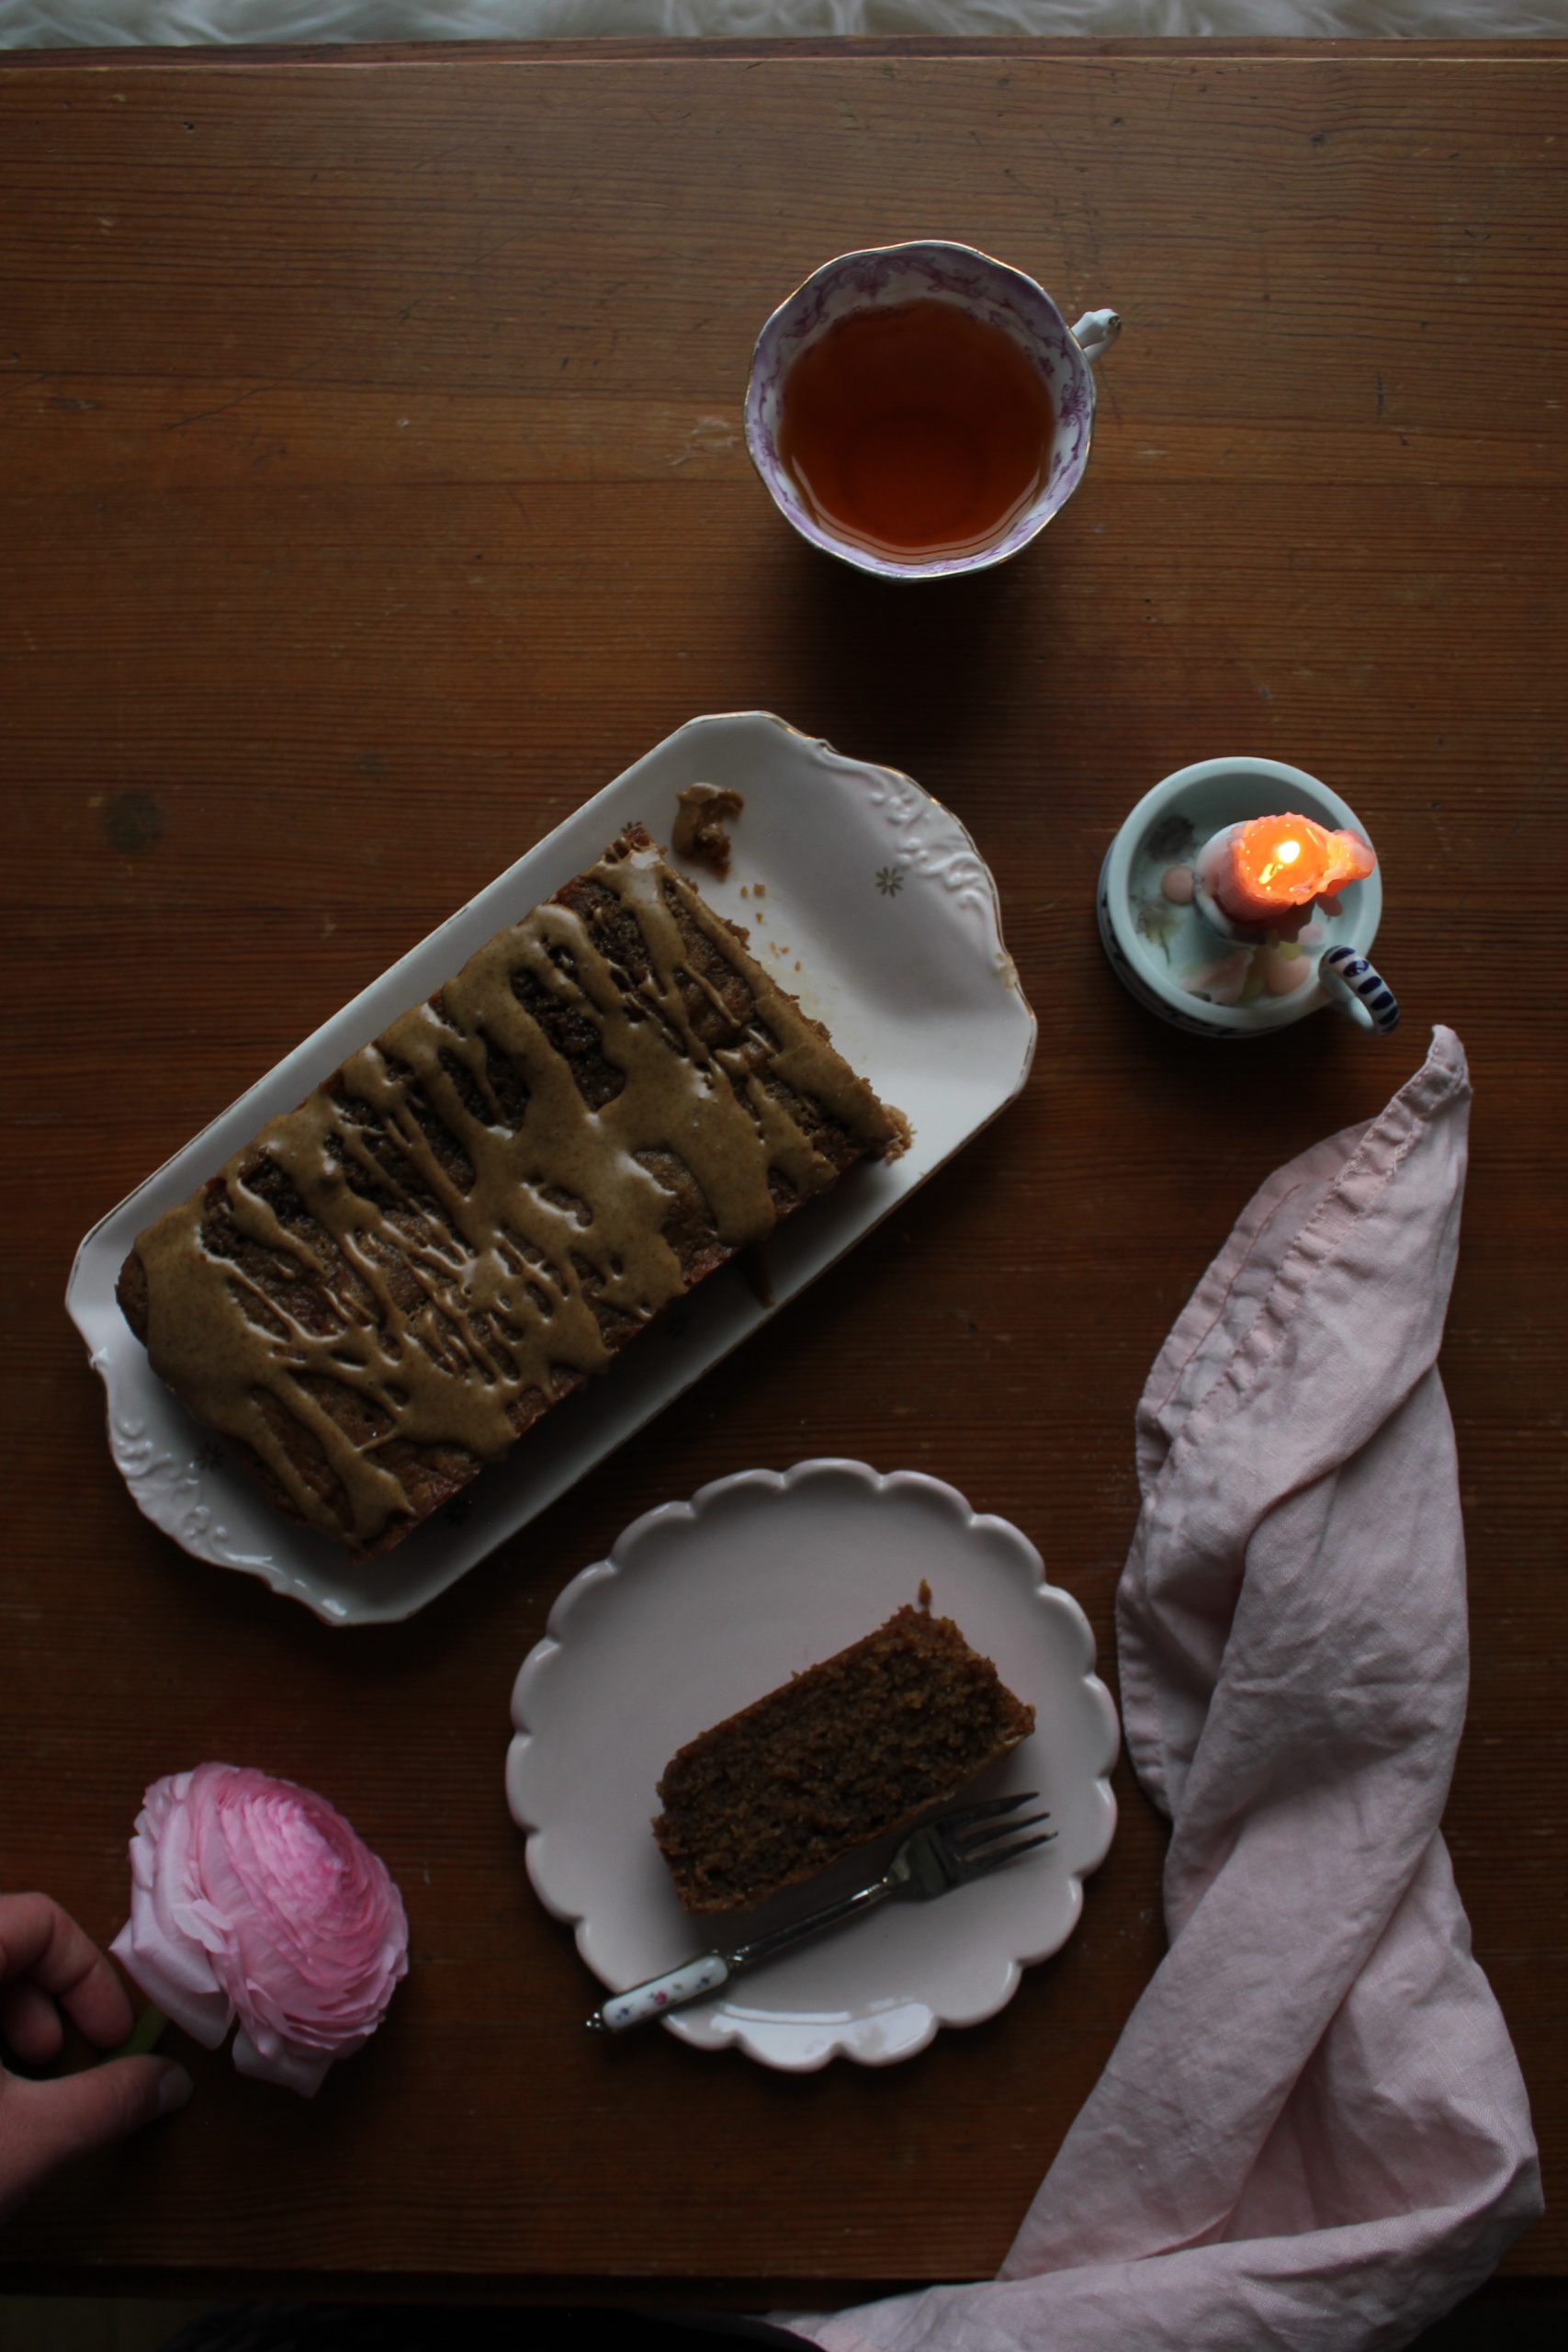 Coffee and cardamom cake